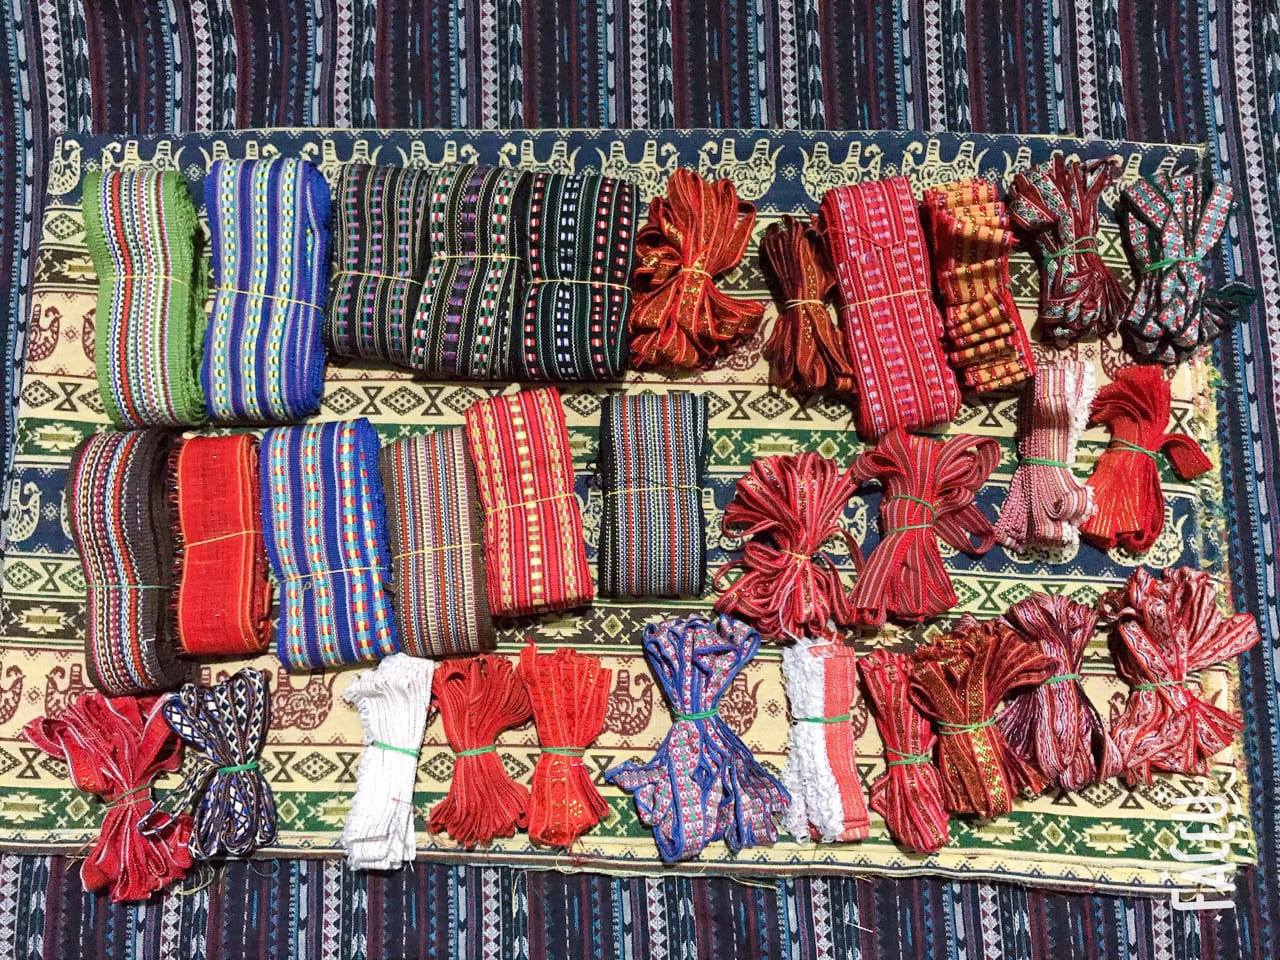 Vải thổ cẩm được dệt bằng tay từ làng Mỹ Nghiệp